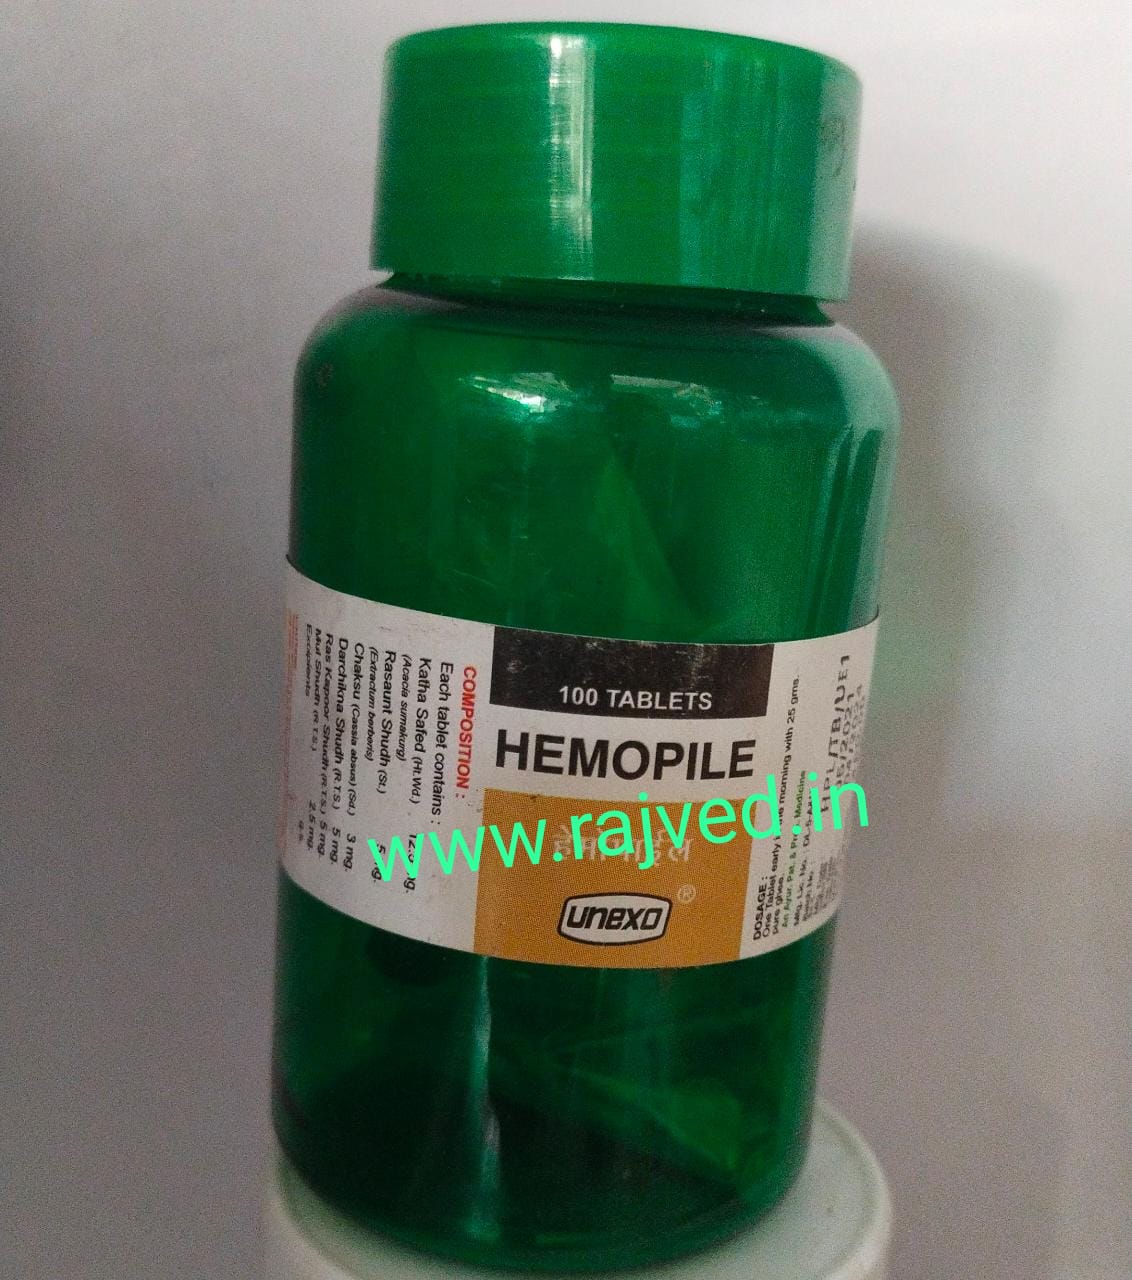 hemopile tablet 100tablet upto 10%off unexo